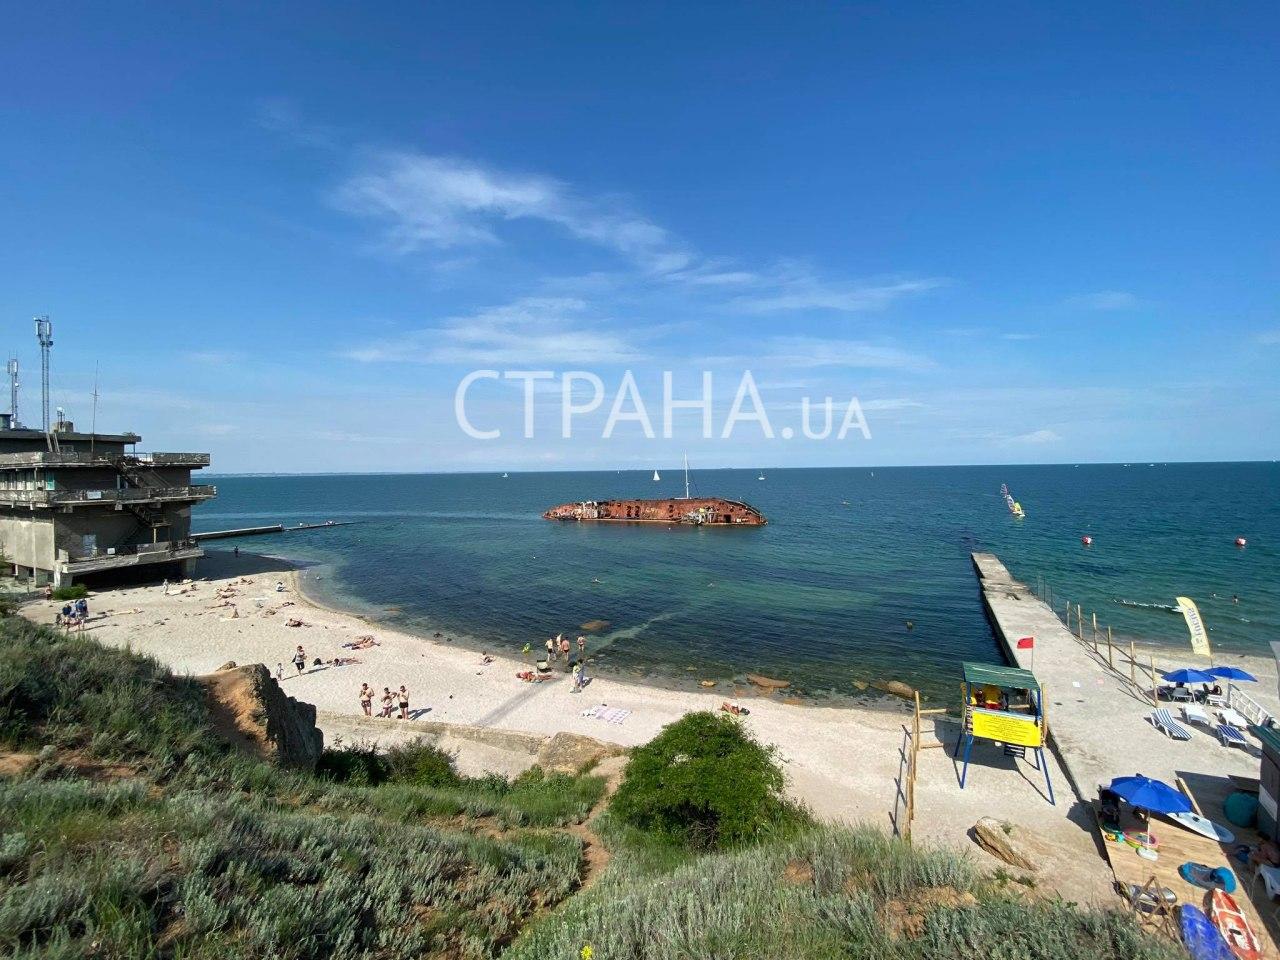 Появились фото с туристами на фоне токсичного танкера Delfi в Одессе. Фото: Страна